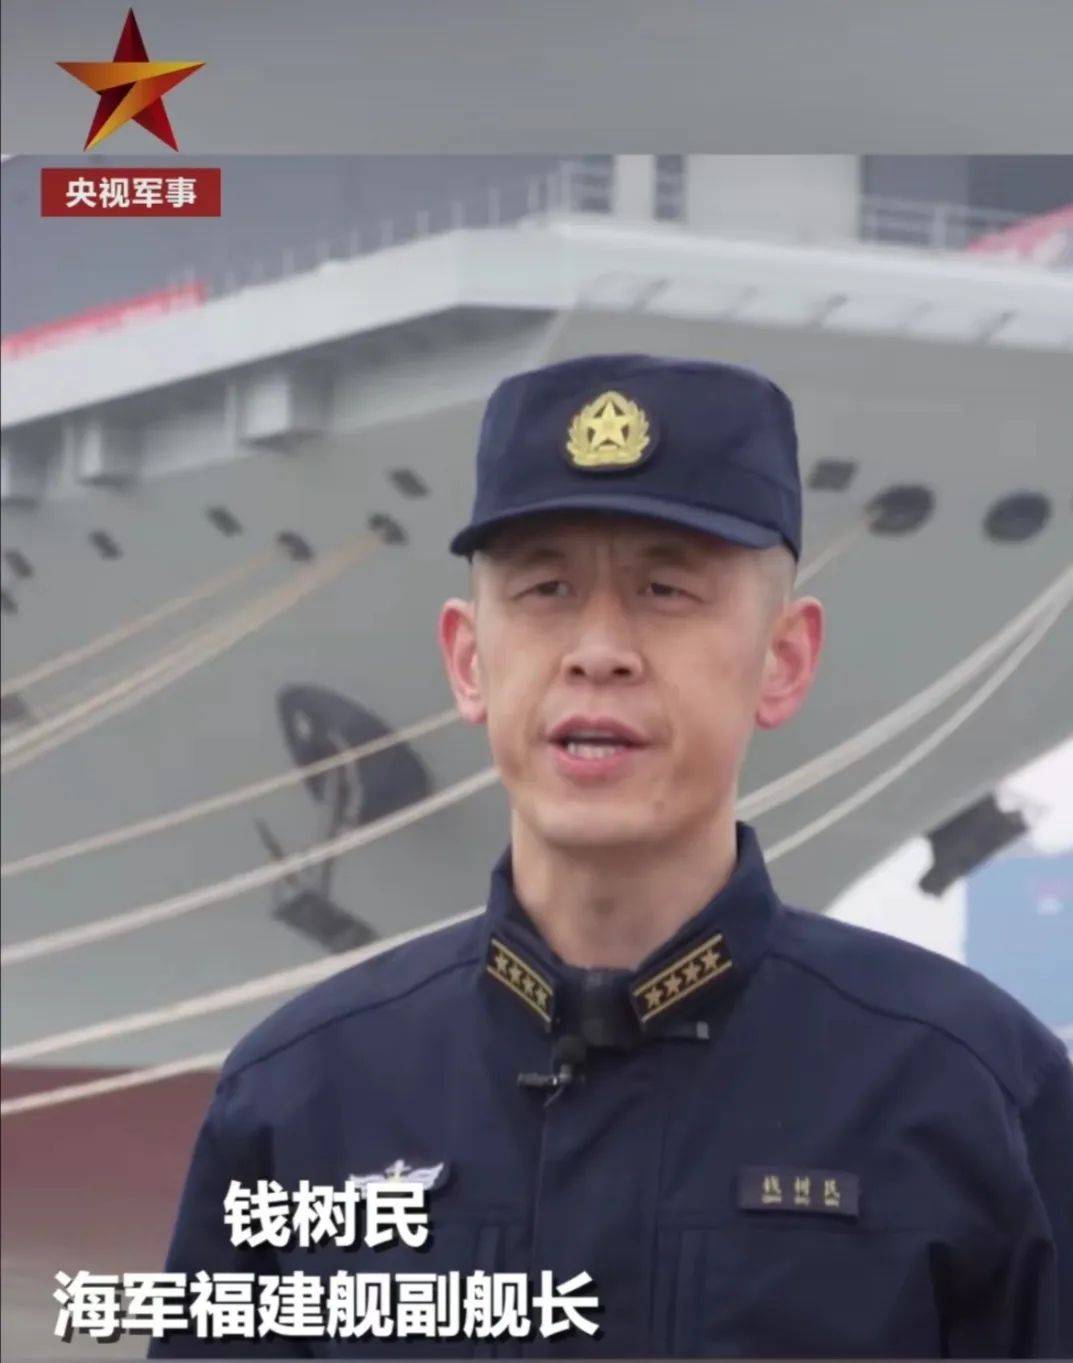 按照中国海军在装备建设上的惯例,接下来应该还会有一艘常规动力航空